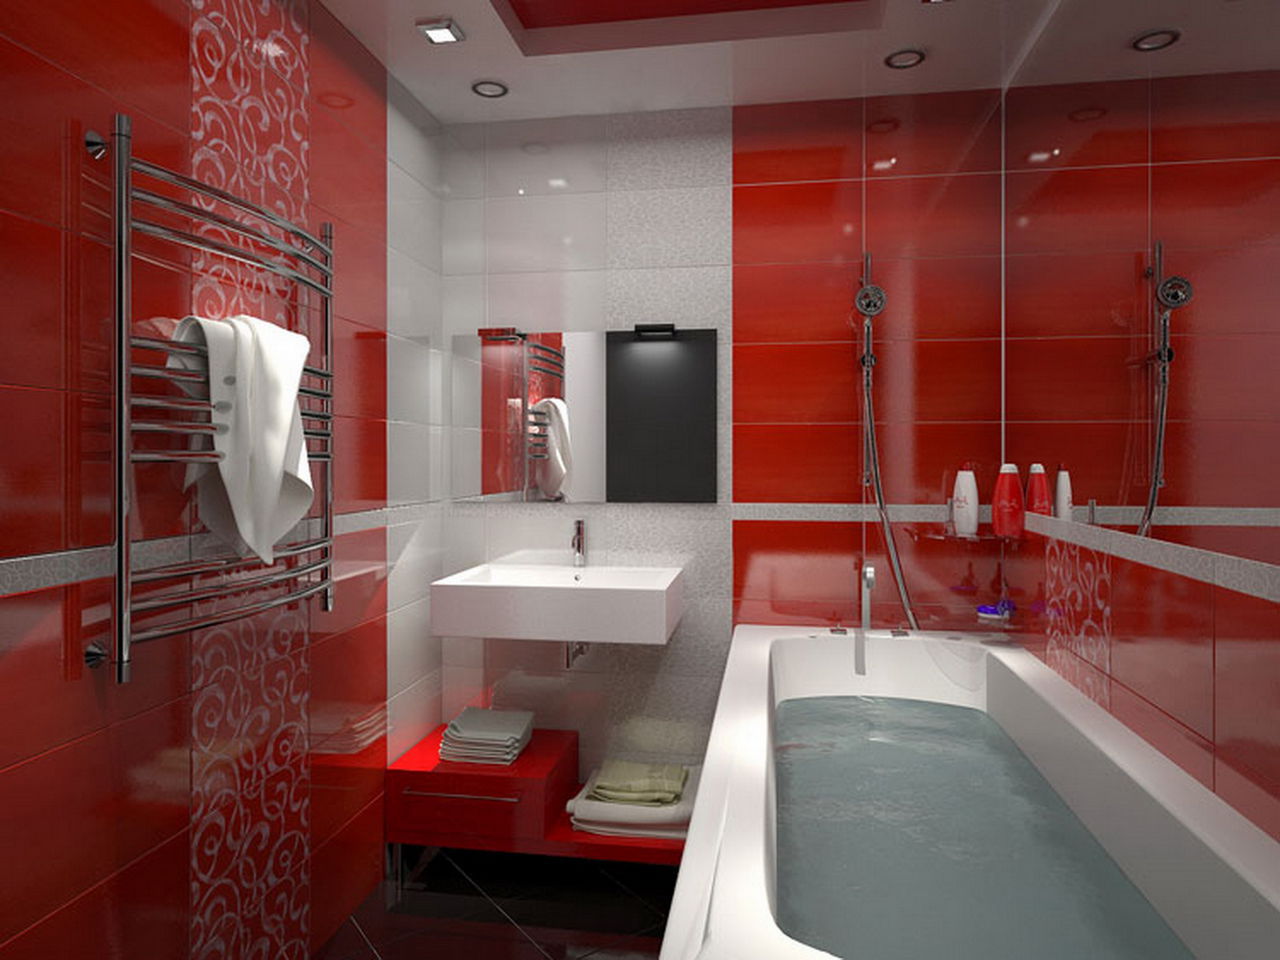 Эксклюзивный дизайн ванной комнаты